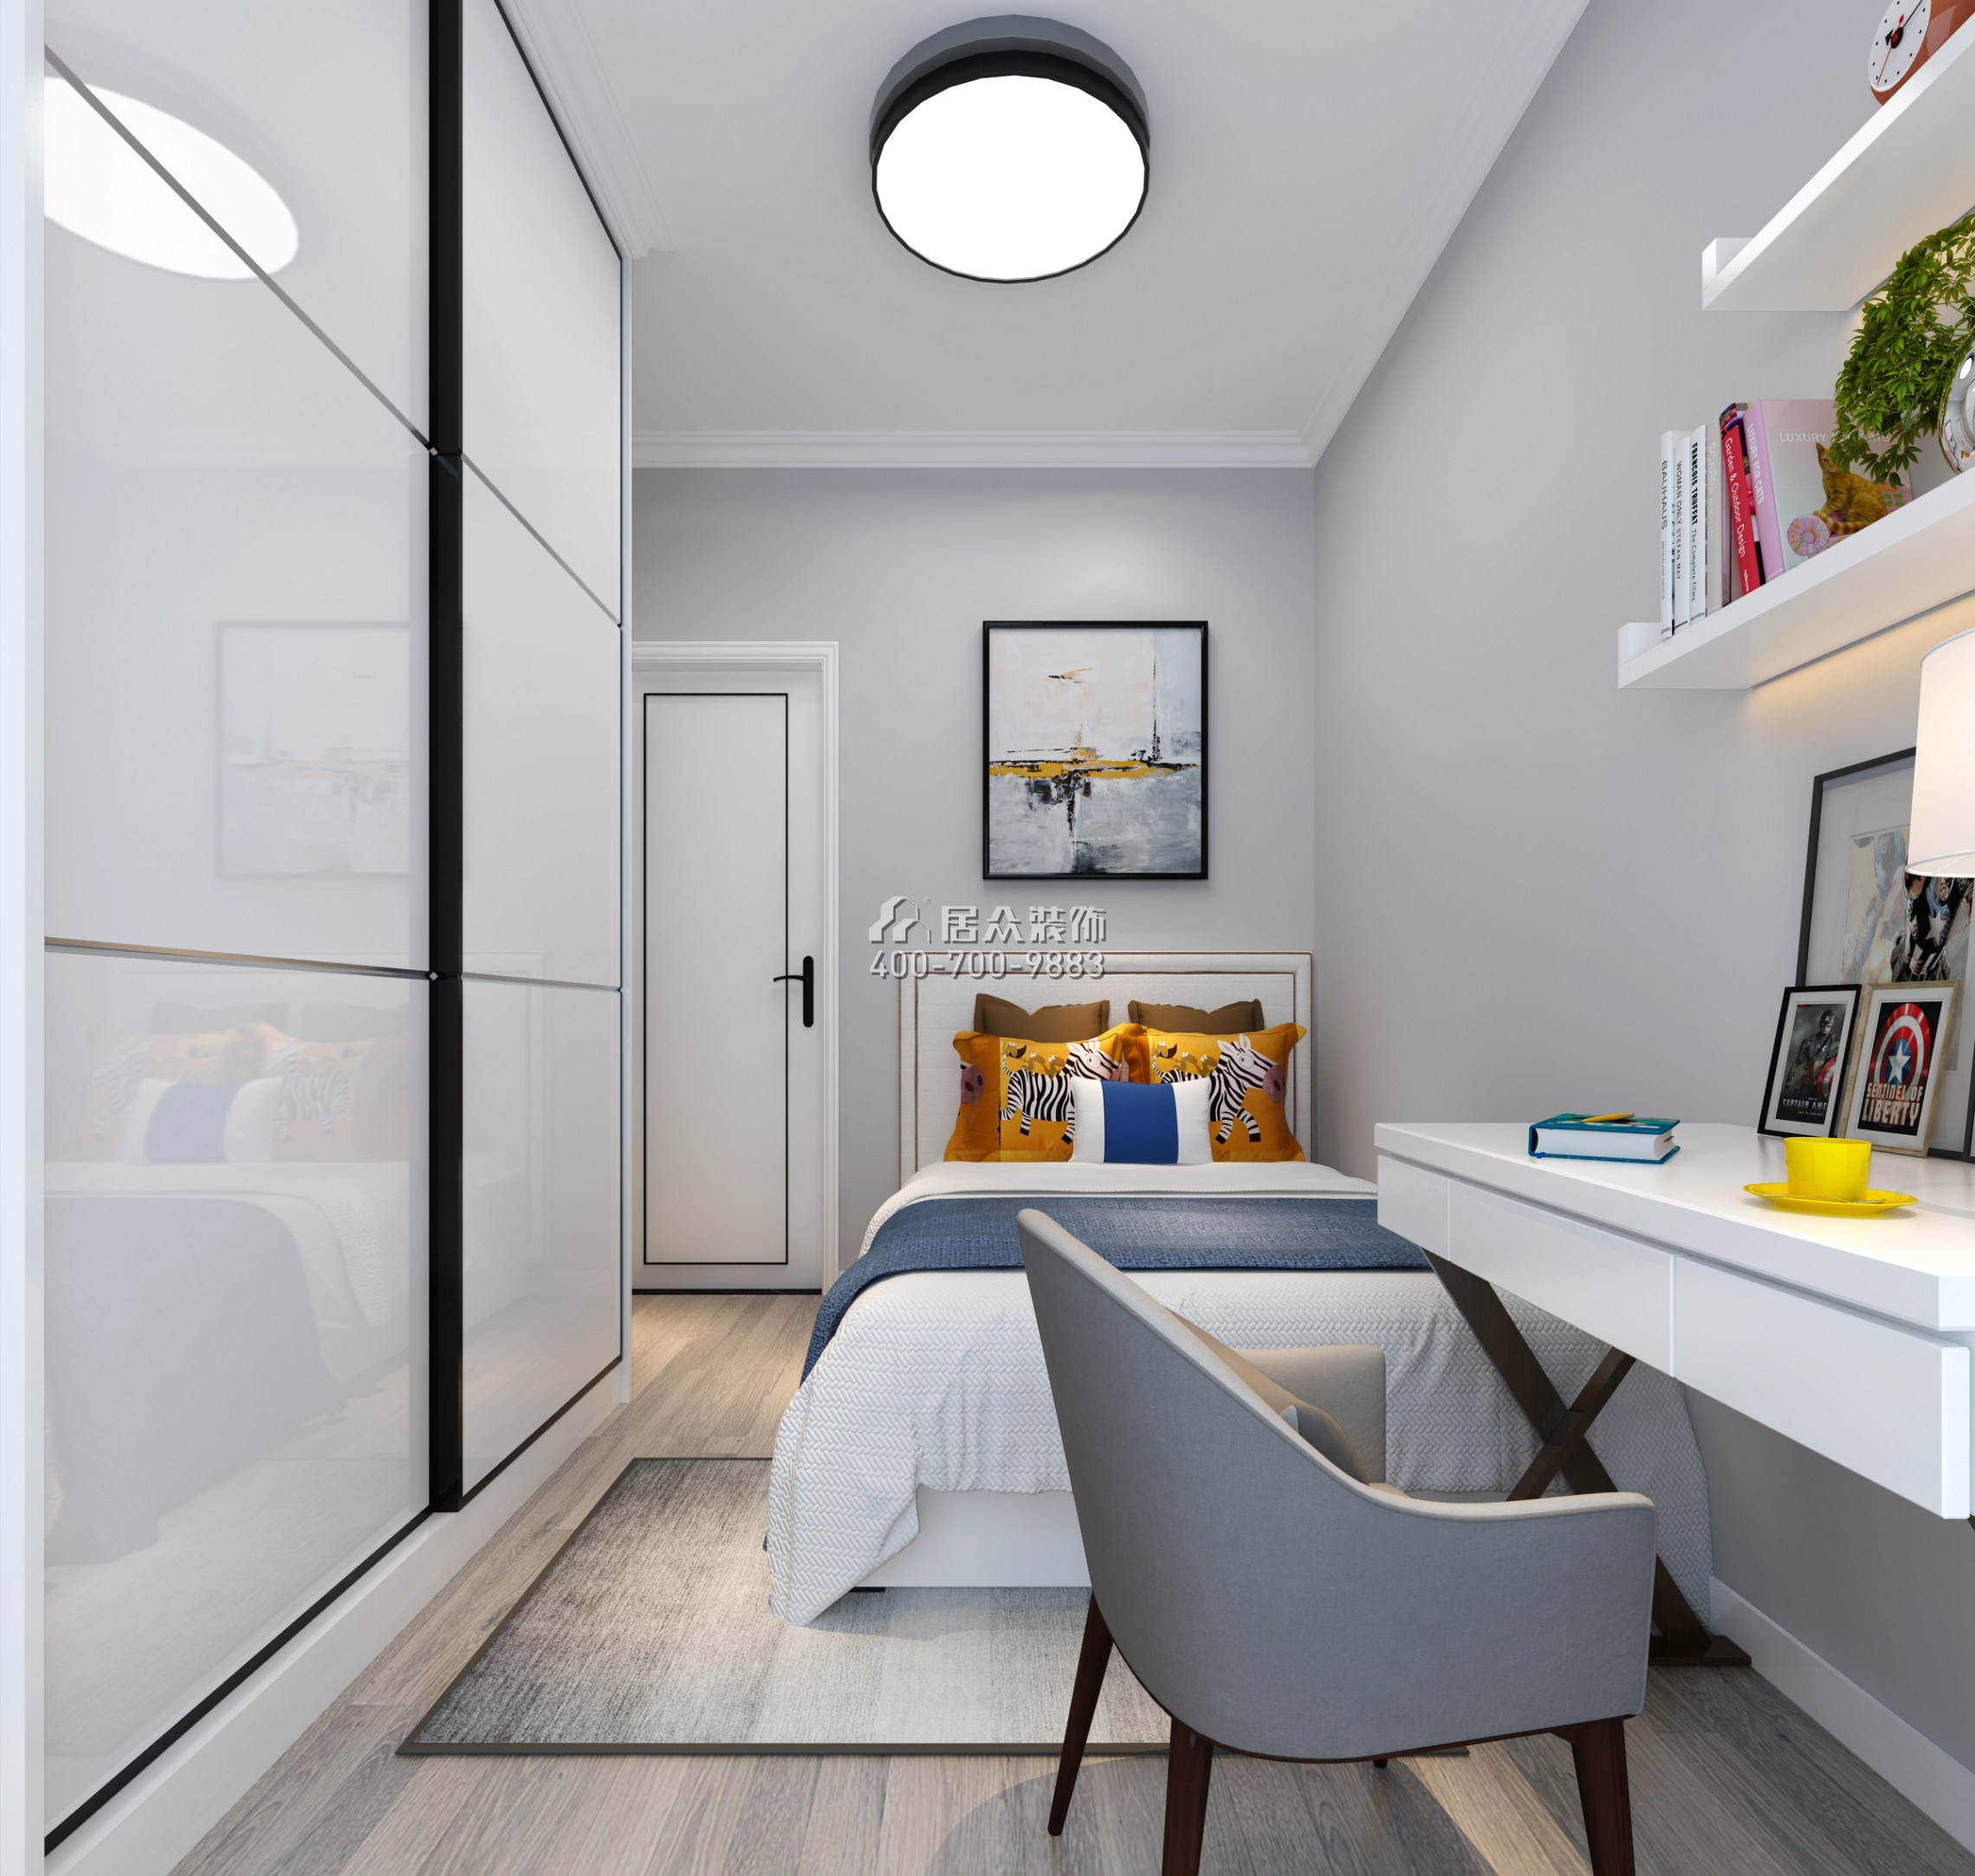 宏發世紀城89平方米現代簡約風格平層戶型臥室裝修效果圖